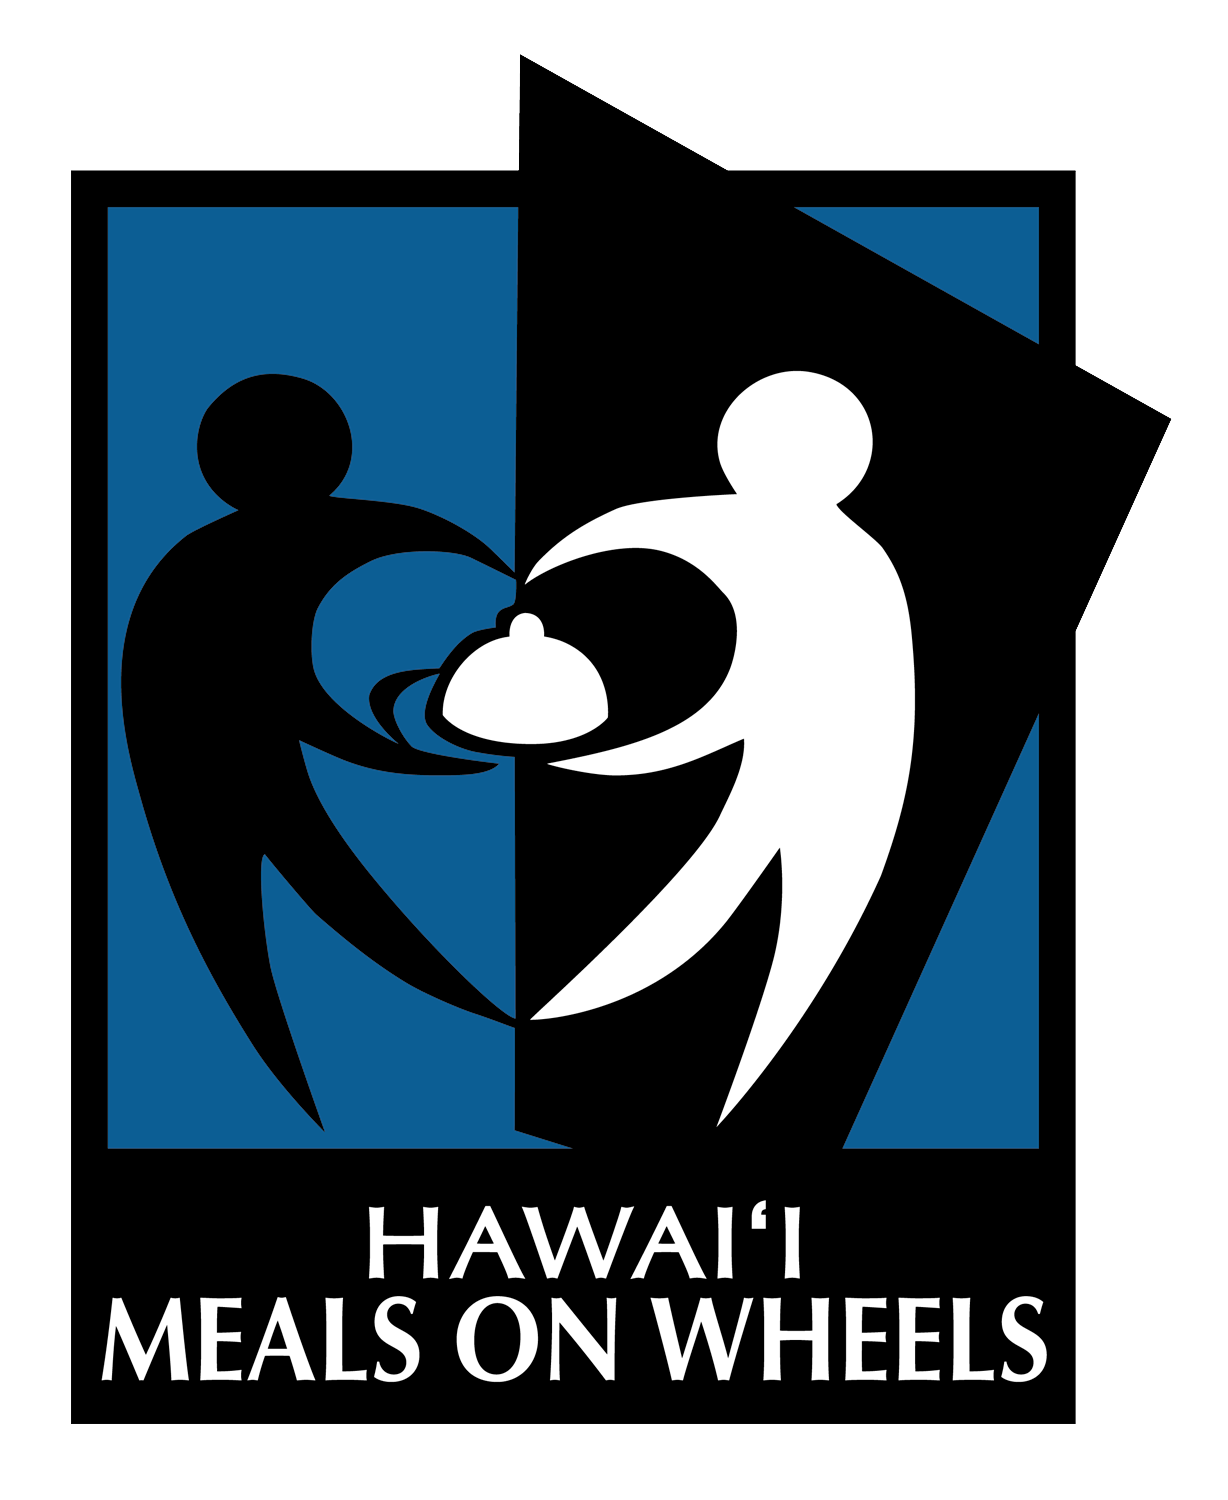 Hawaii Meals on Wheels